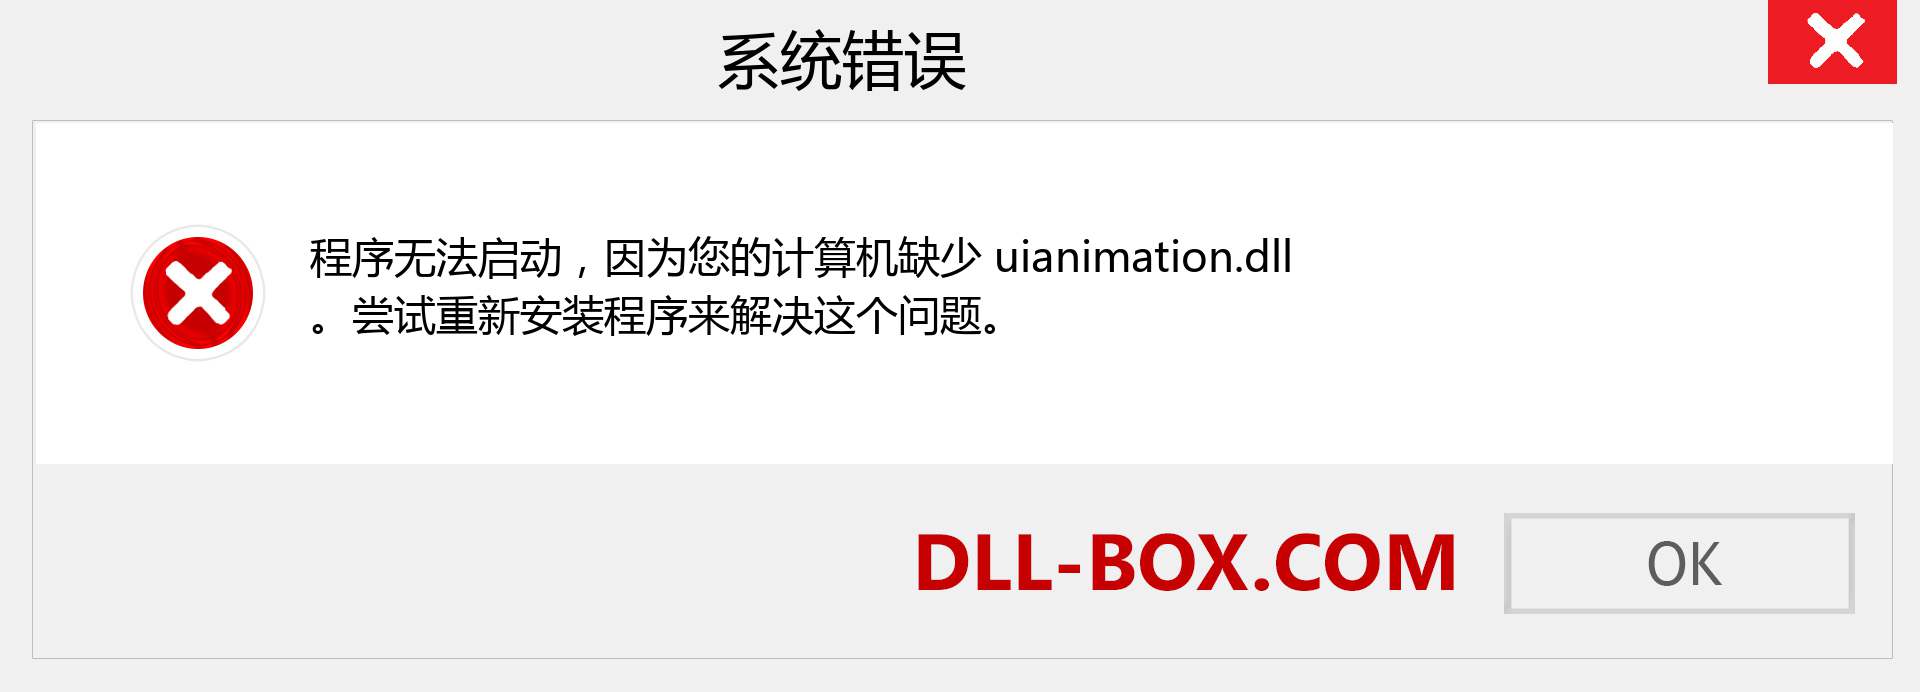 uianimation.dll 文件丢失？。 适用于 Windows 7、8、10 的下载 - 修复 Windows、照片、图像上的 uianimation dll 丢失错误